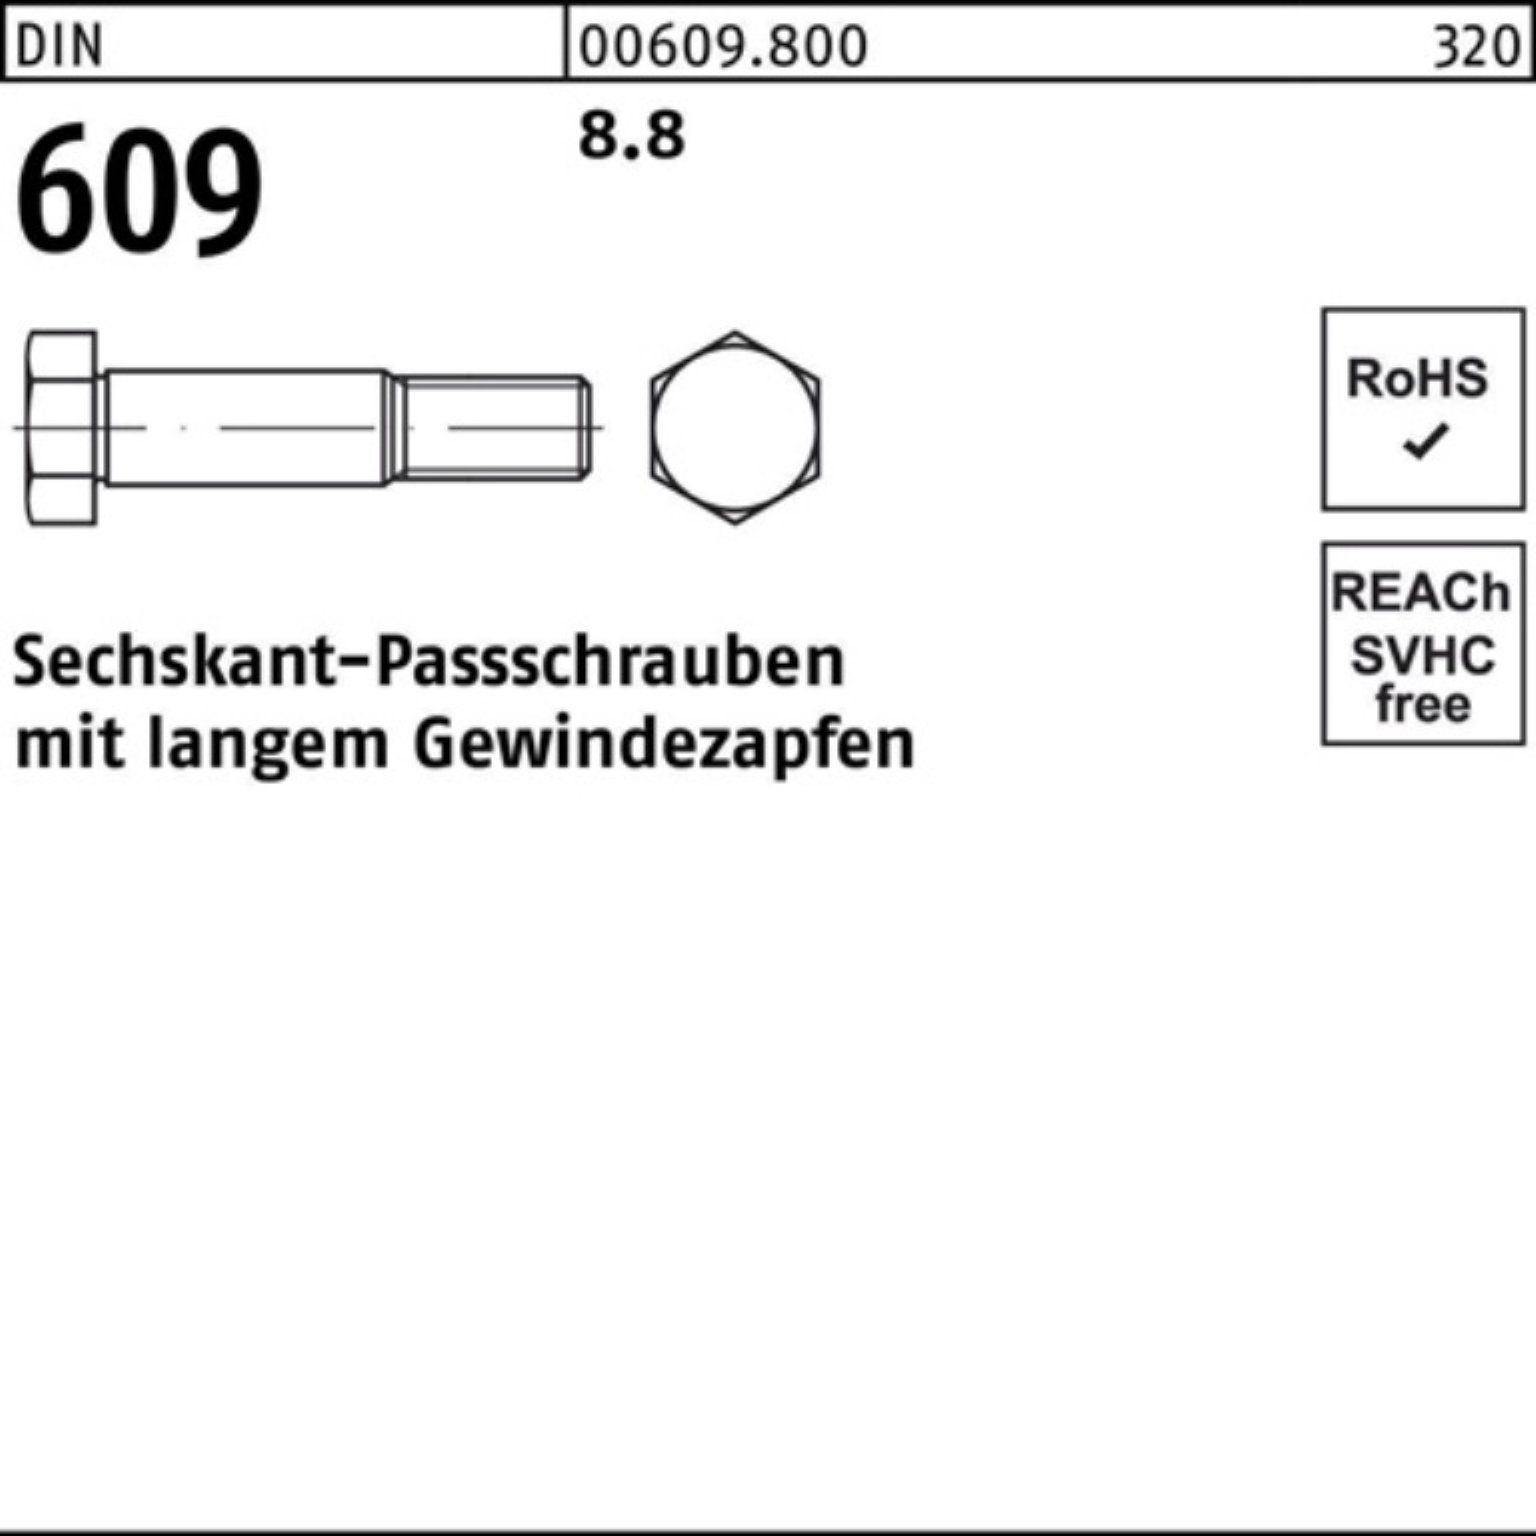 Reyher Schraube 100er M24x langem Gewindezapfen 609 Sechskantpassschraube DIN Pack 70